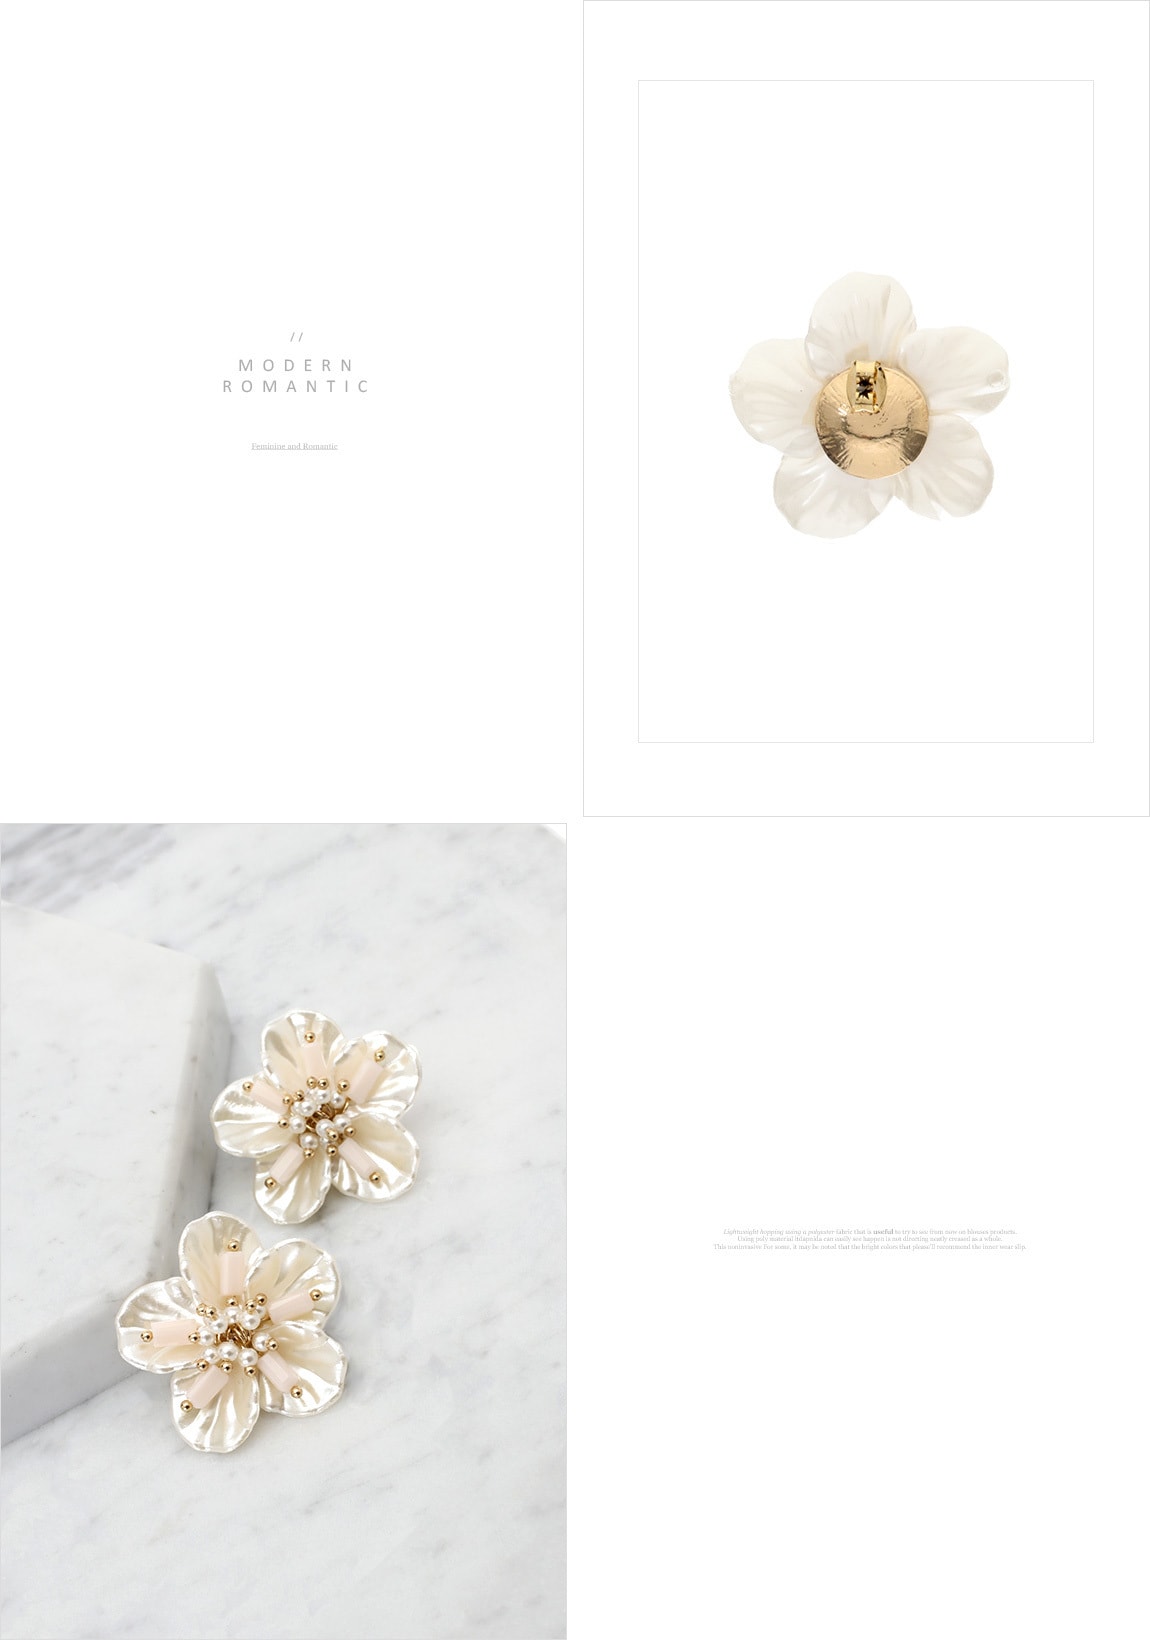 【韩国直邮】ATTRANGS 珍珠花边装饰耳环 白色 均码